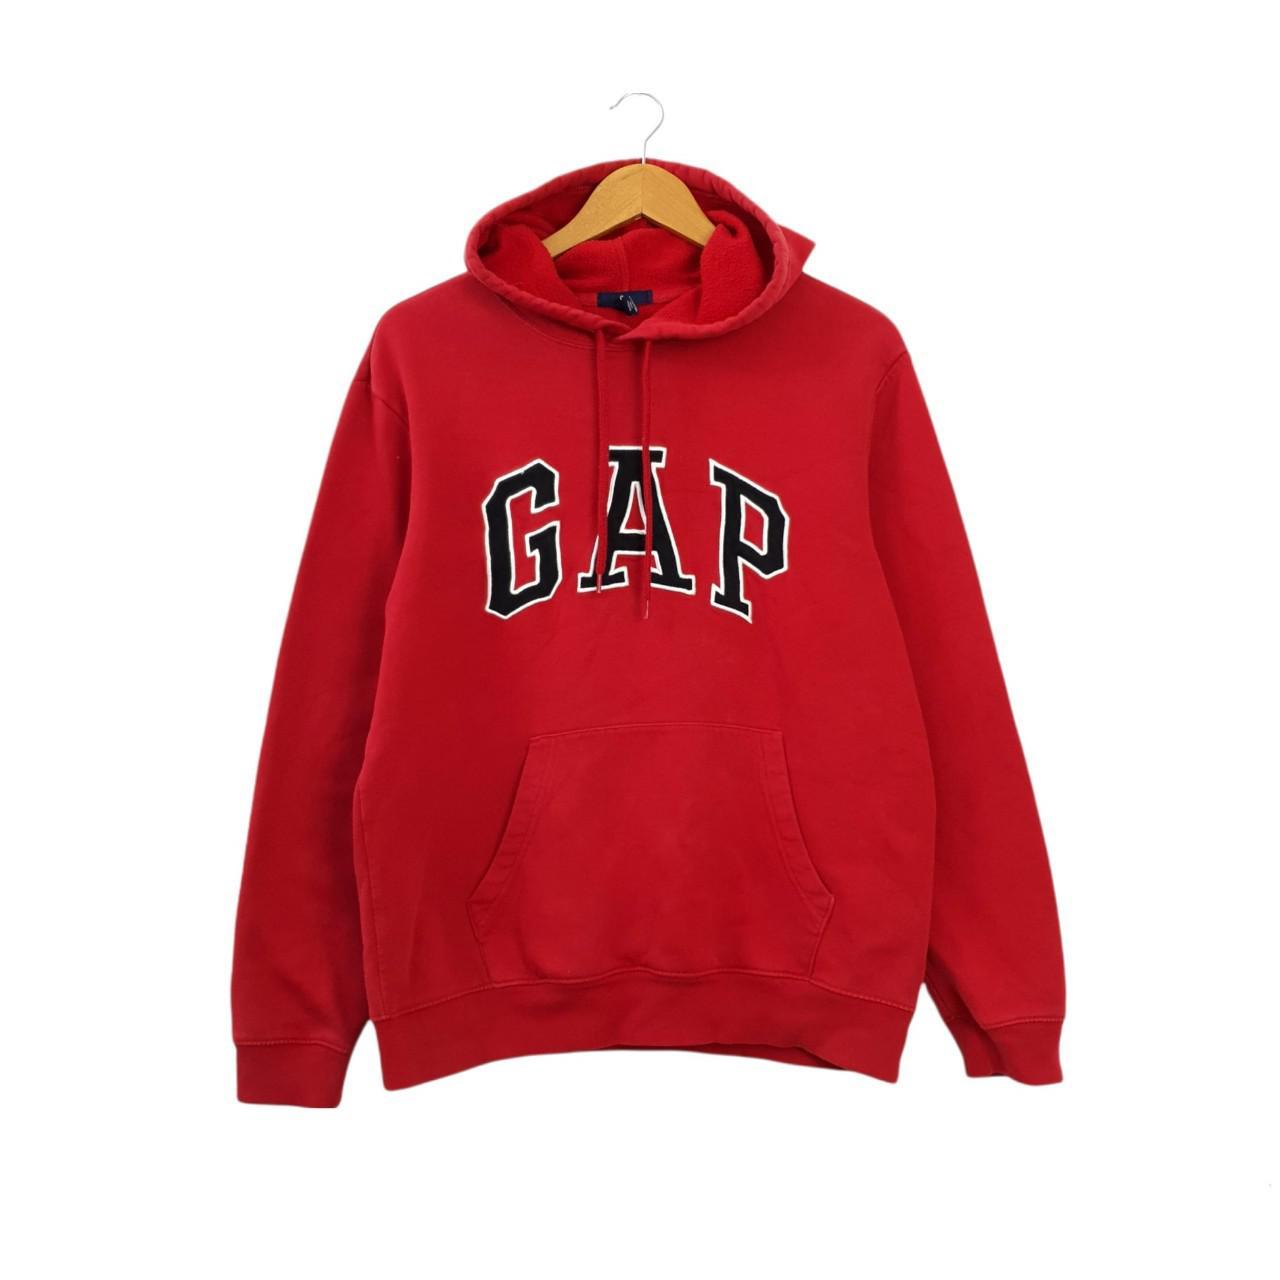 Vintage 90s Gap hoodie size medium - excellent... - Depop